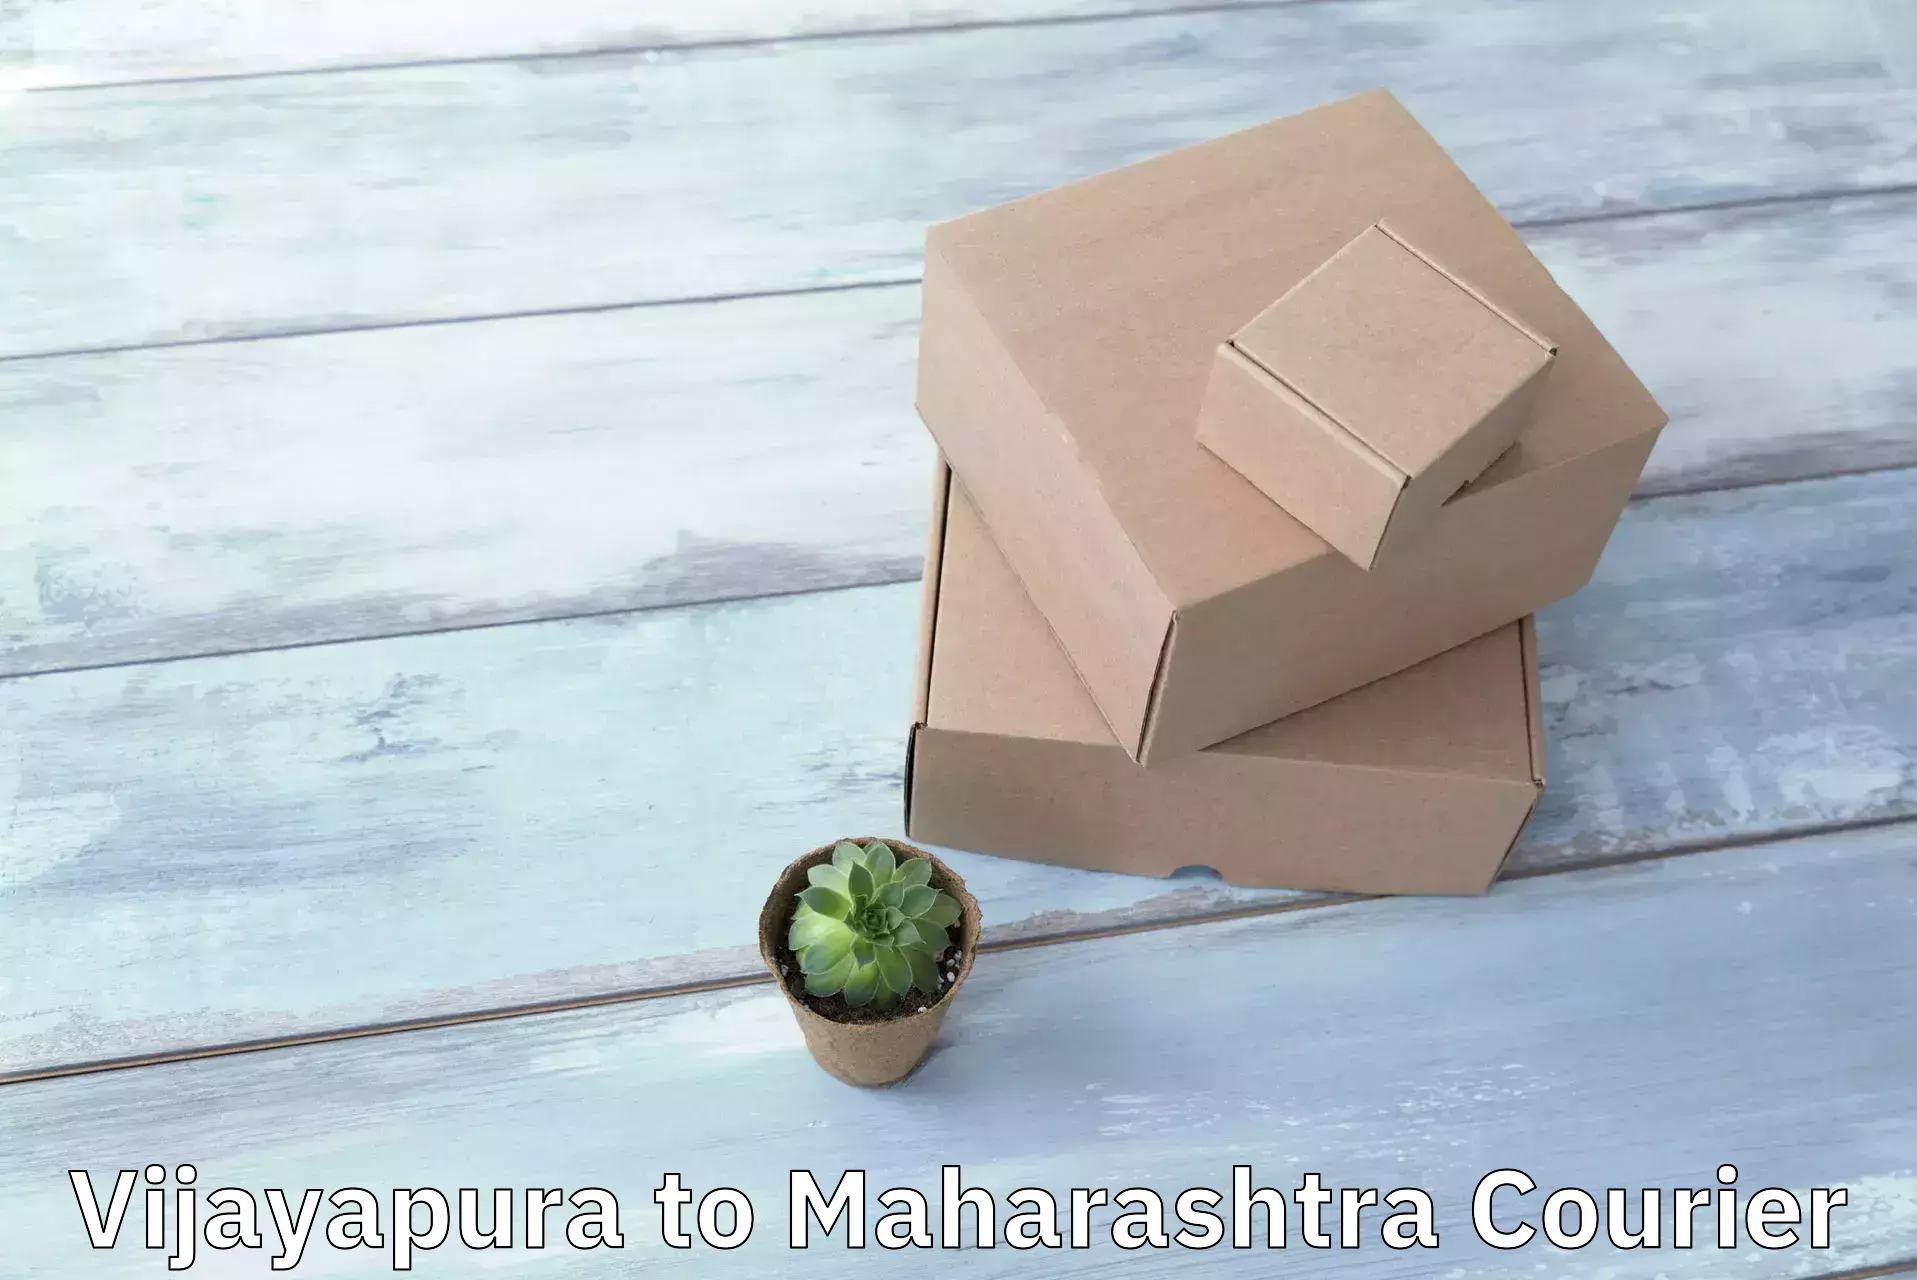 Premium courier solutions in Vijayapura to Solapur